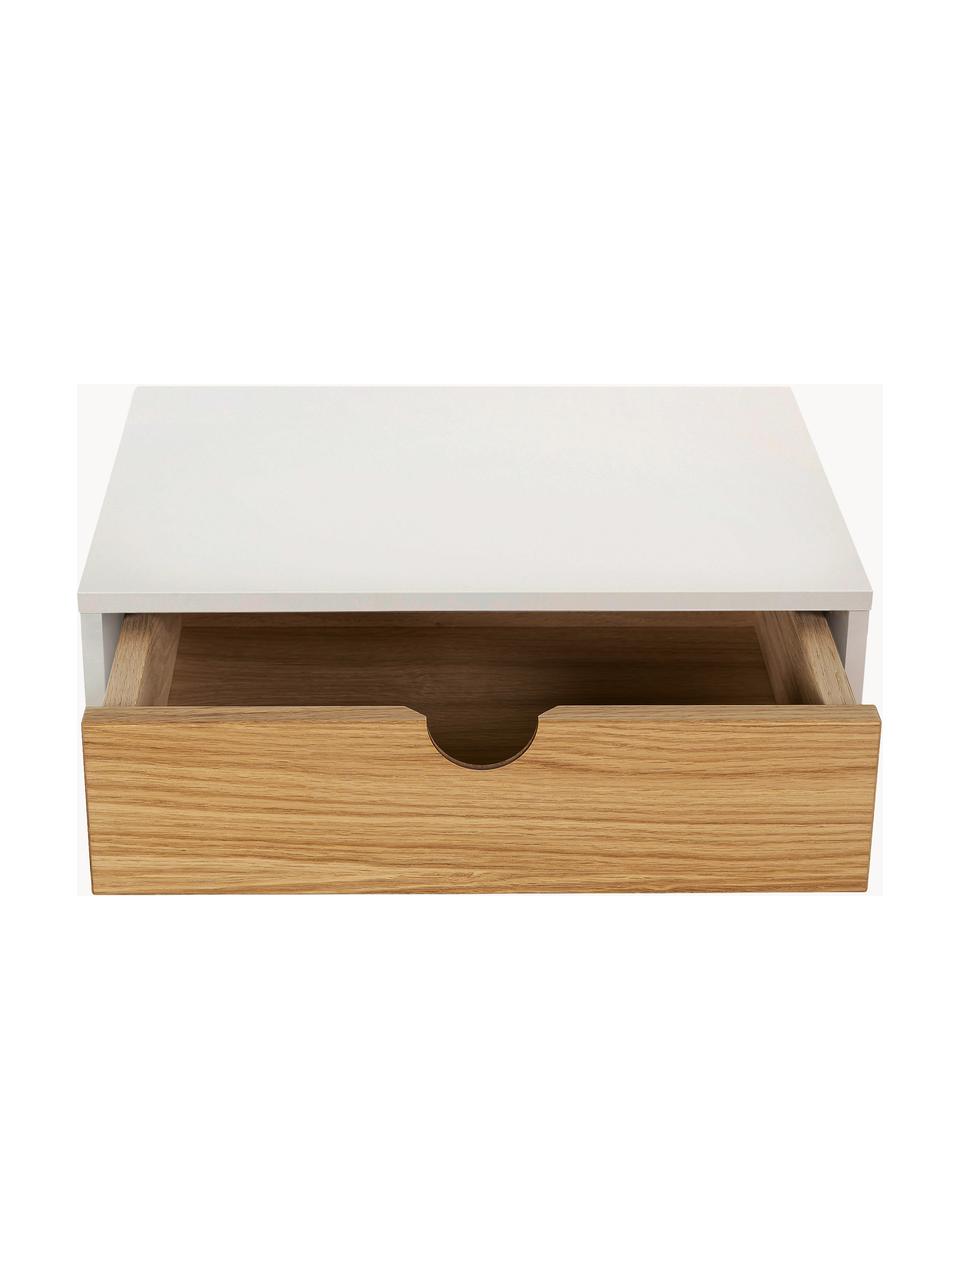 Nástenný nočný stolík Farsta, Drevovláknitá doska strednej hustoty (MDF) s dyhou z dubového dreva, Dubové drevo, biela, Š 40 x V 15 cm